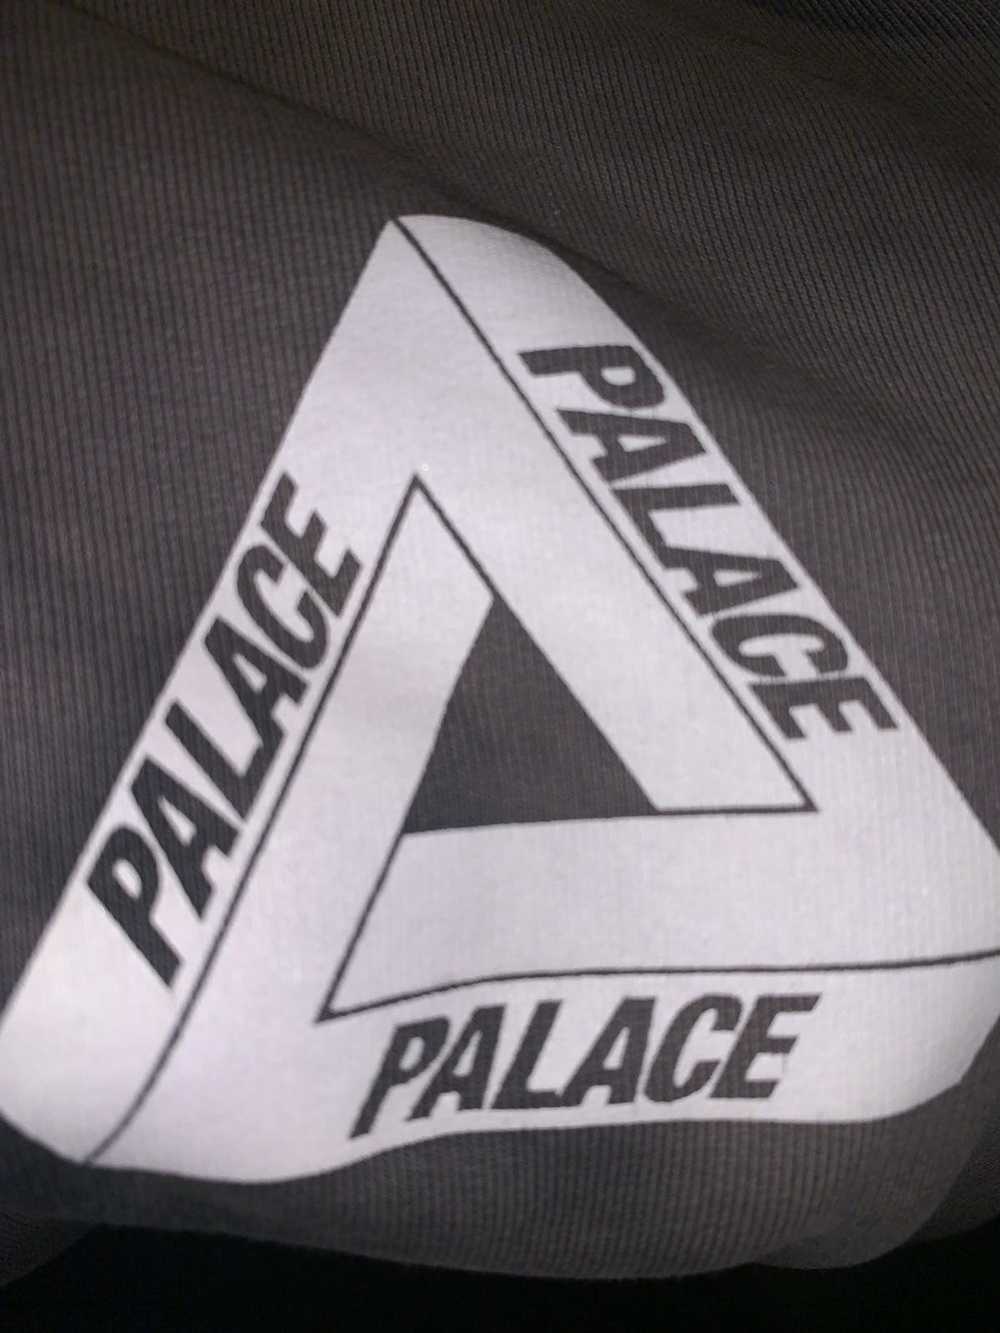 Palace Extremely rare Palace sweatshirt - image 3